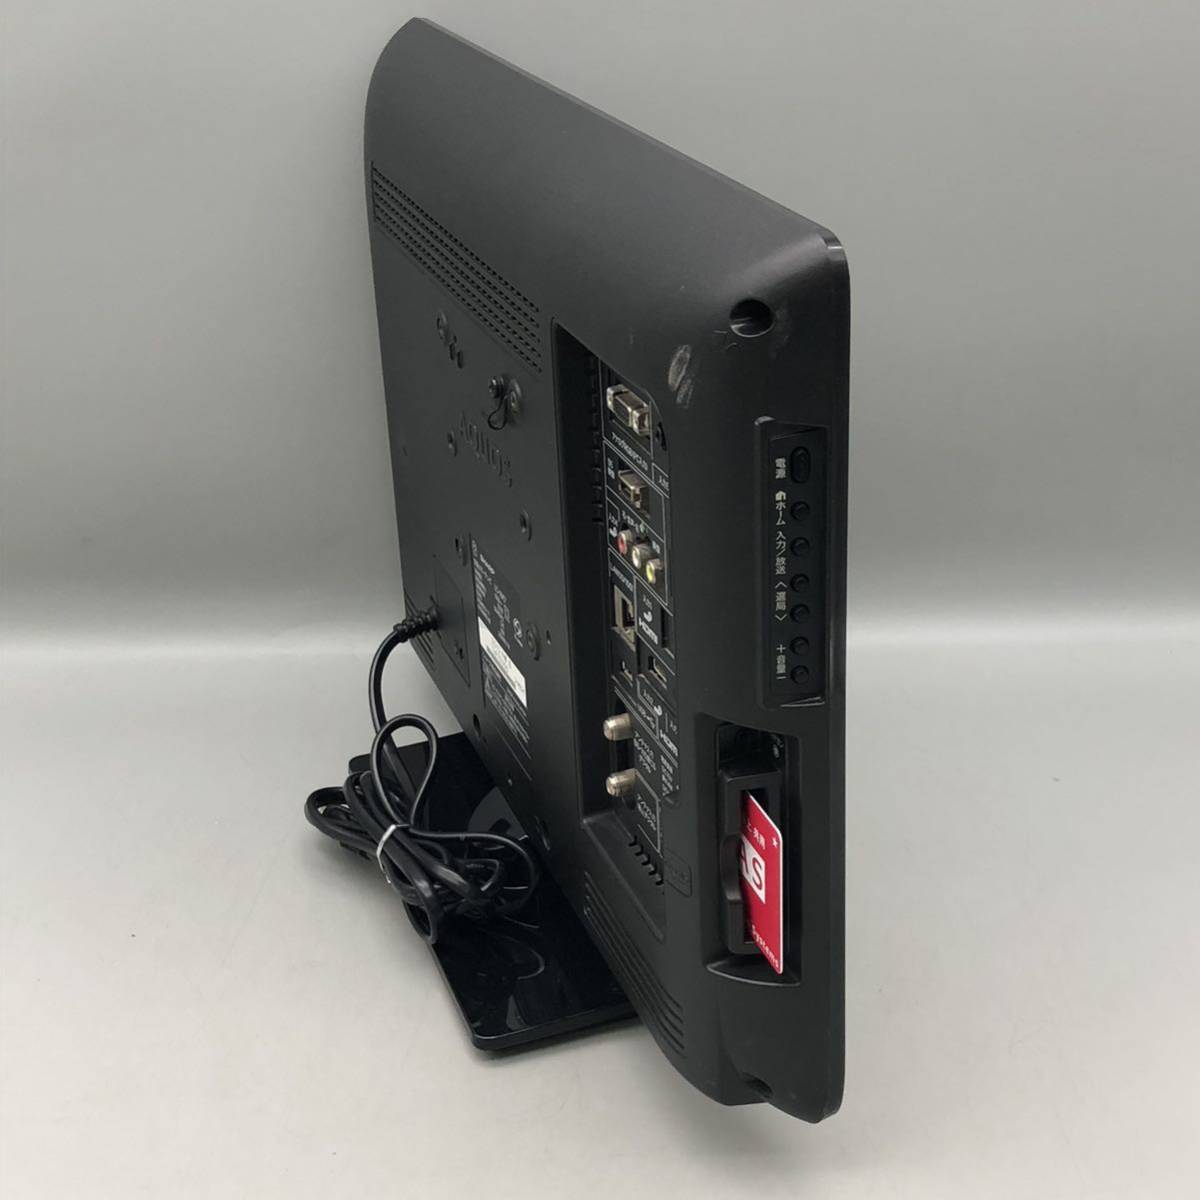 SHARP シャープ 液晶カラーテレビ AQUOS アクオス 19V型 LC-19K7 黒 ブラック モニター TV 19インチ リモコン GA995WJSA 付き 動作確認済み_画像3